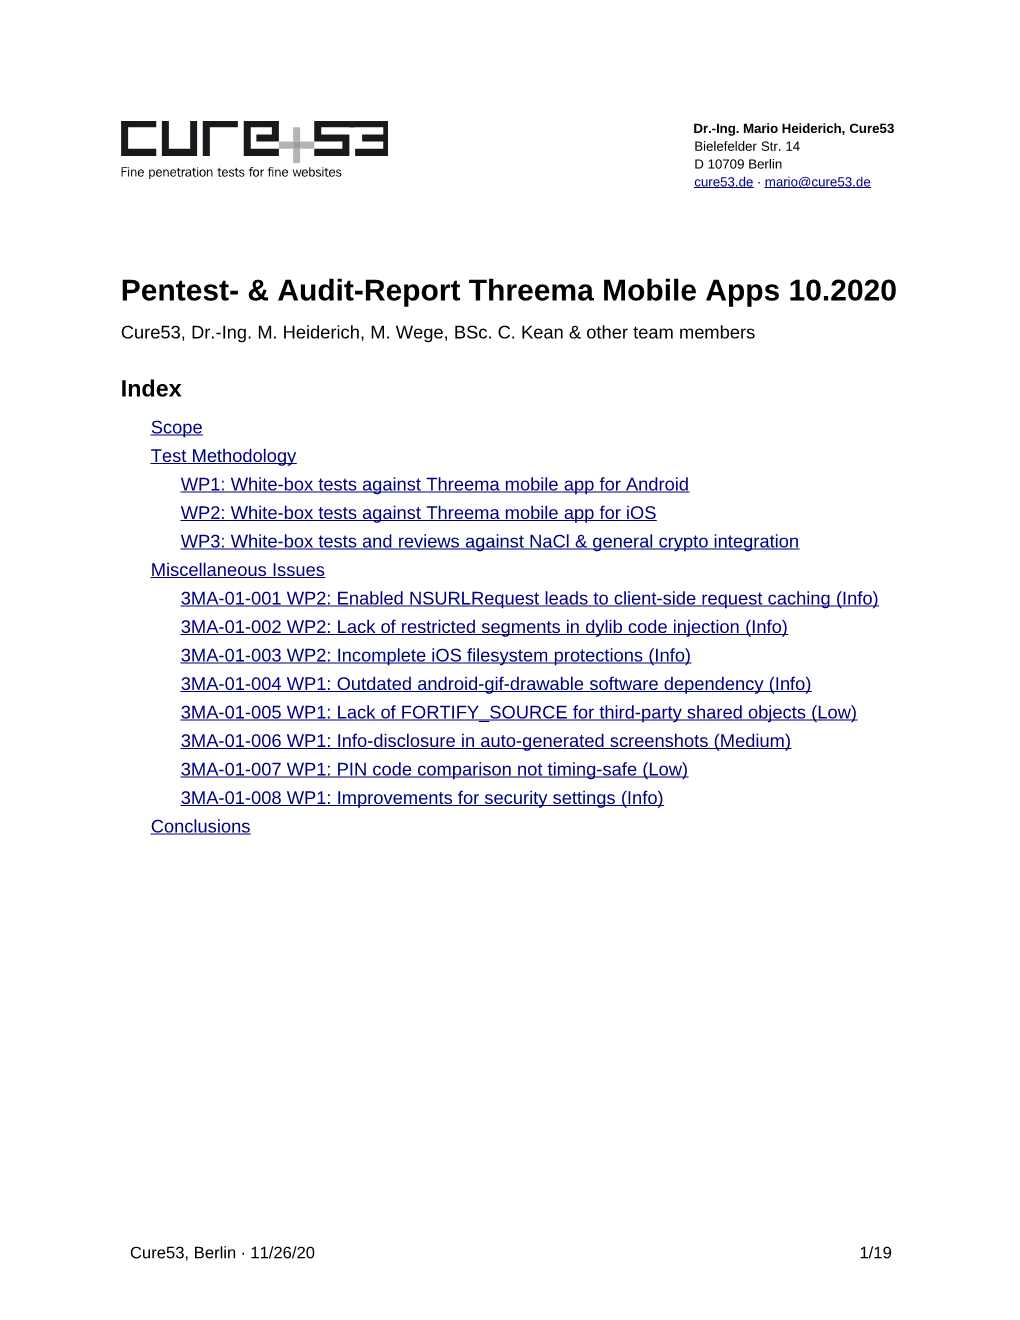 Pentest- & Audit-Report Threema Mobile Apps 10.2020